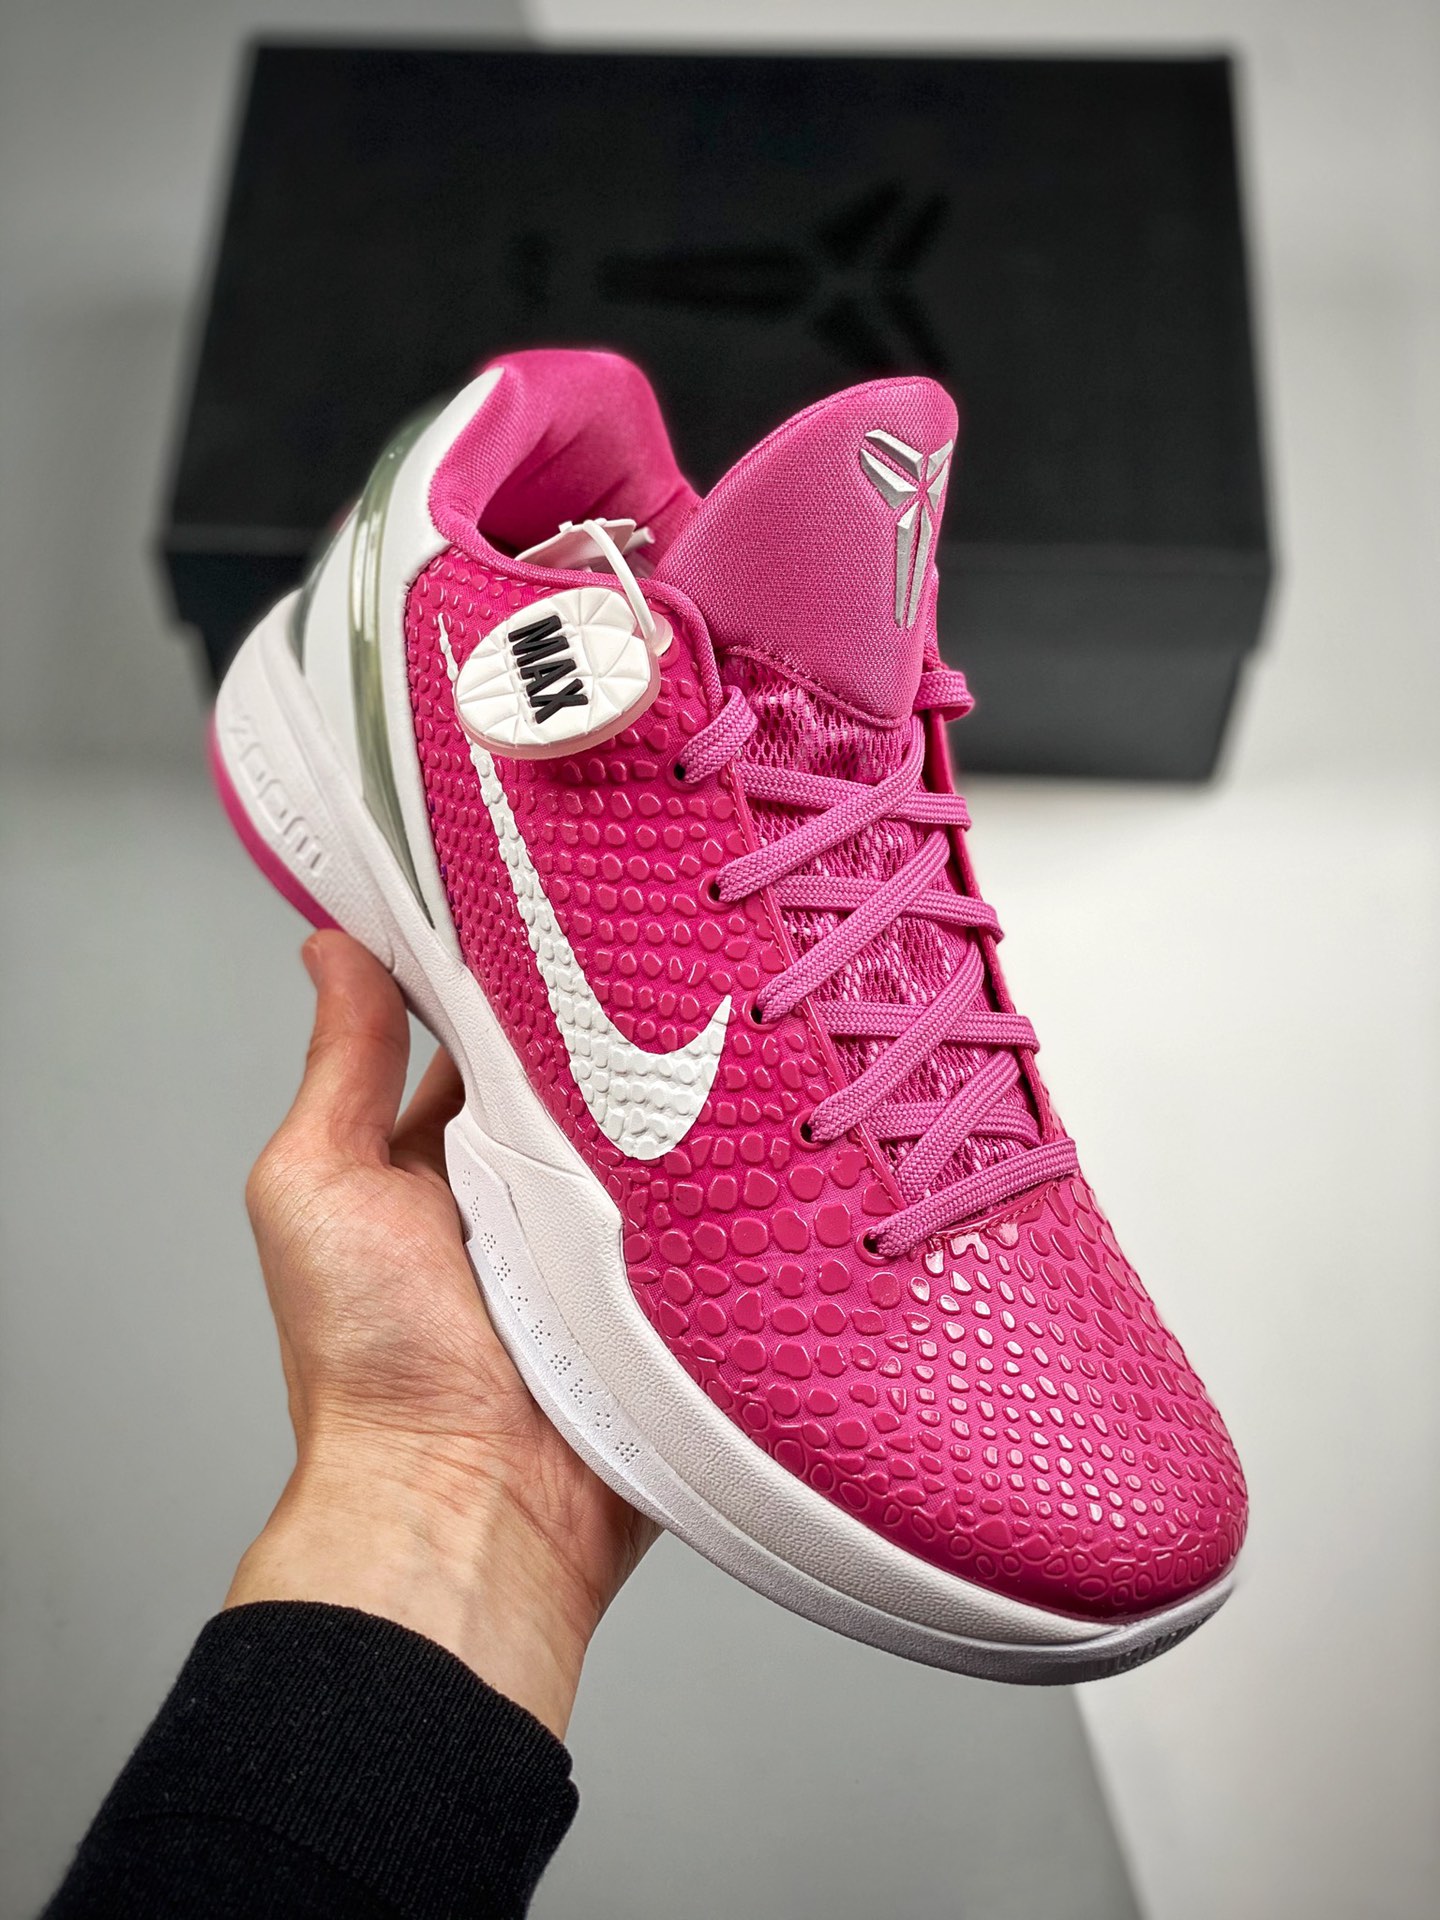 Nike Kobe 6 Protro “Think Pink” Pinkfire/Metallic Silver-White For